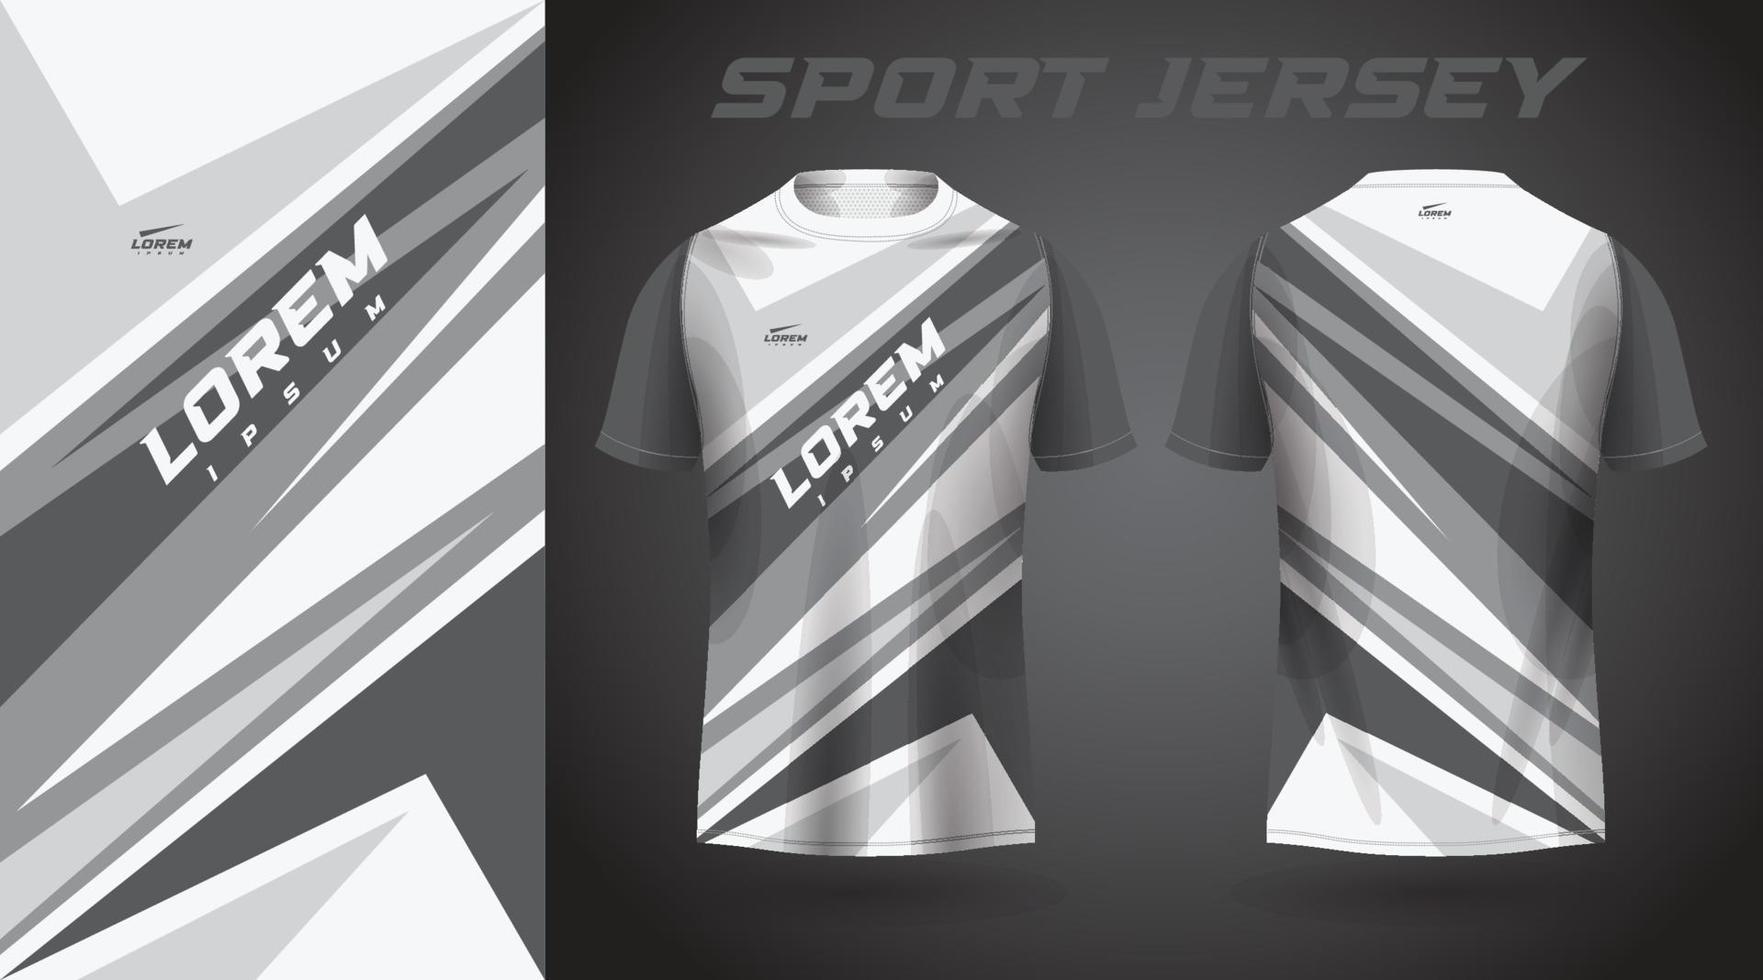 svart vit t-shirt sporttröja design vektor